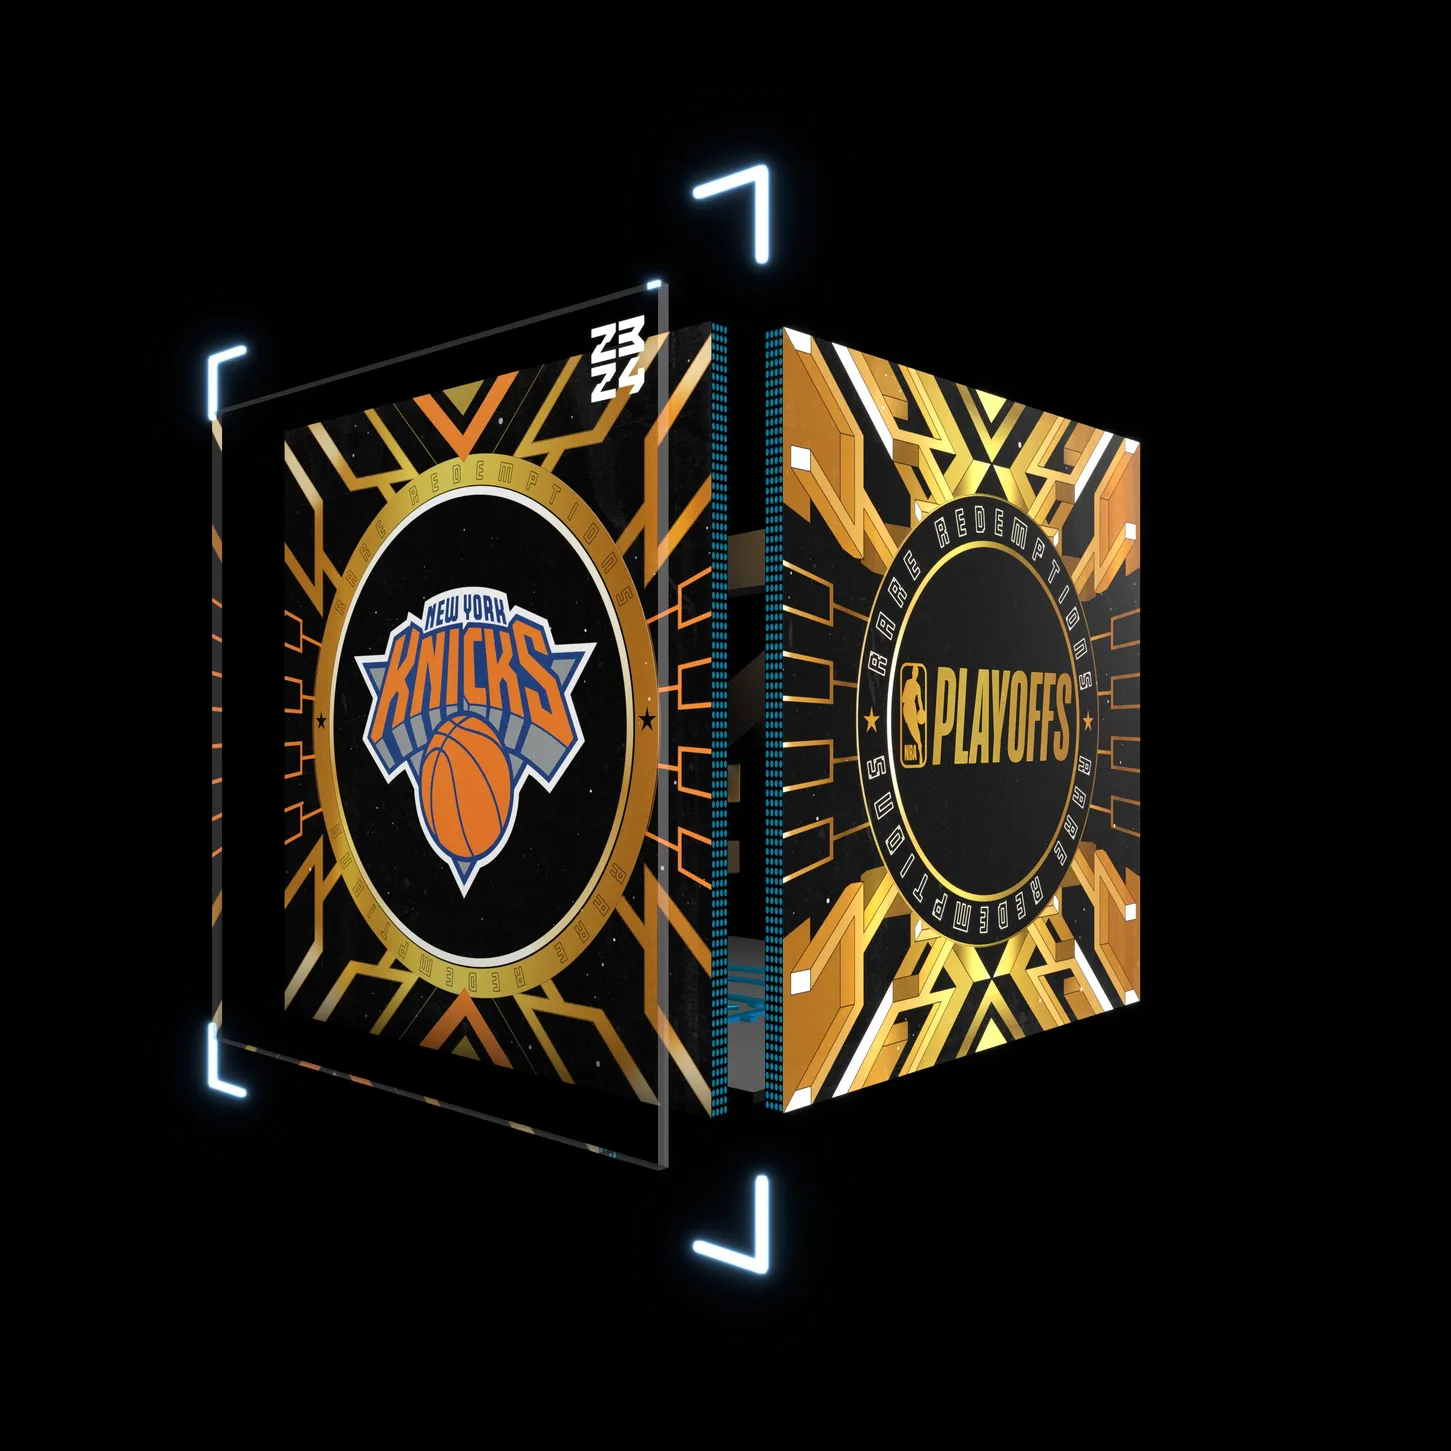 New York Knicks - Redemption